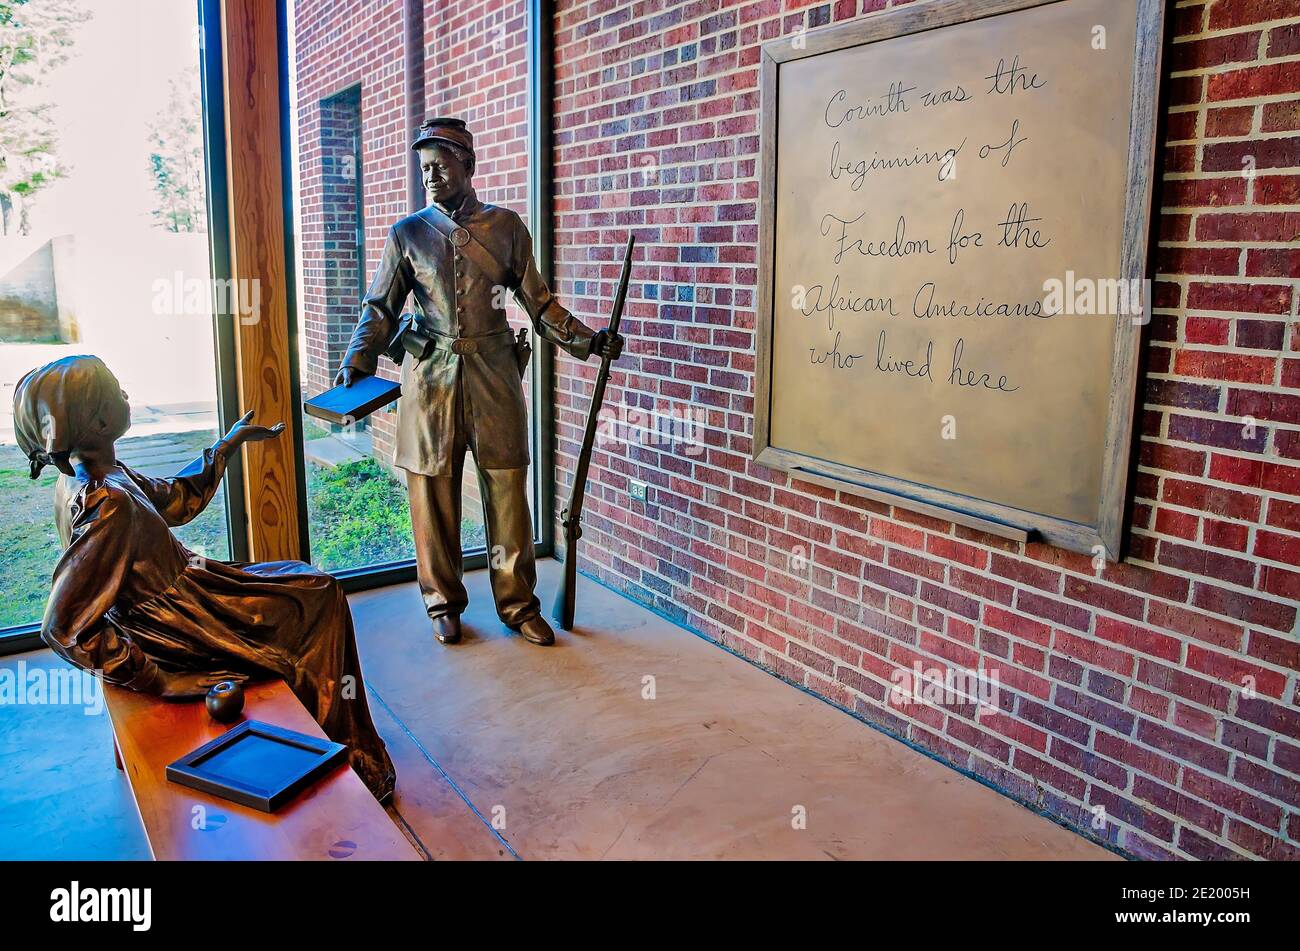 Des statues de bronze commémorent la fin de l'esclavage et l'éducation des Afro-Américains au Centre d'interprétation de la guerre civile de Corinthe, Mississippi. Banque D'Images